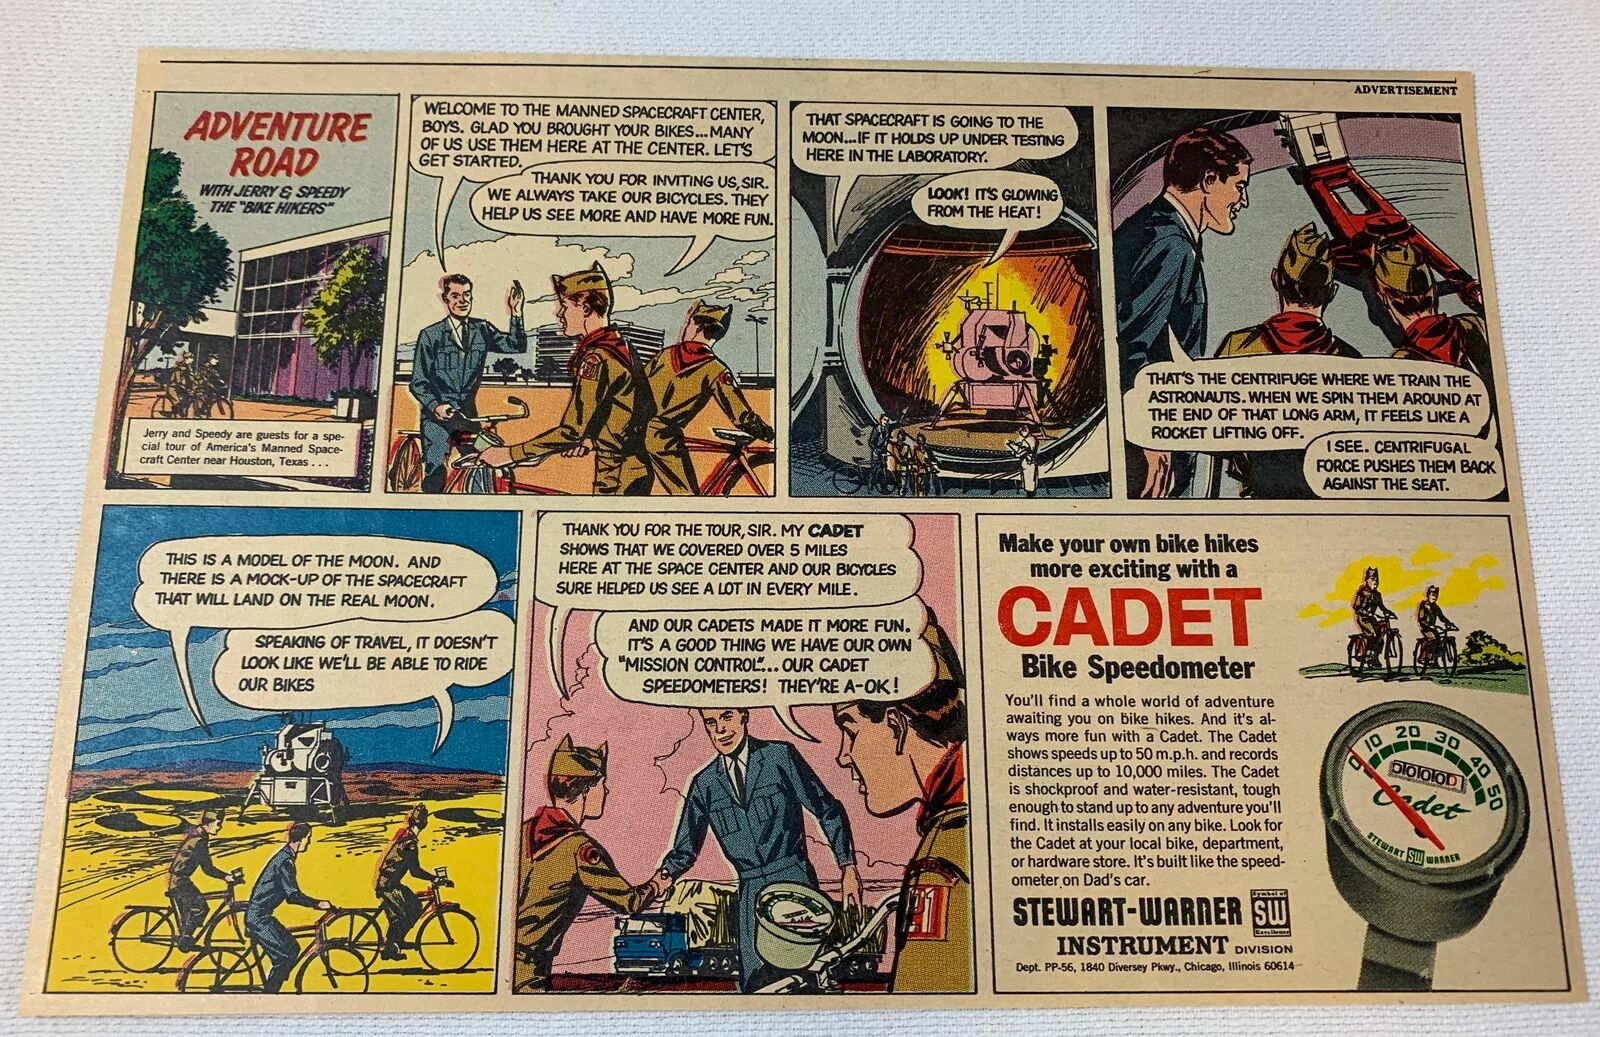 1966 Cadet Bike Speedometer cartoon ad ~ AMERICA'S MANNED SPACECRAFT CENTER, TX